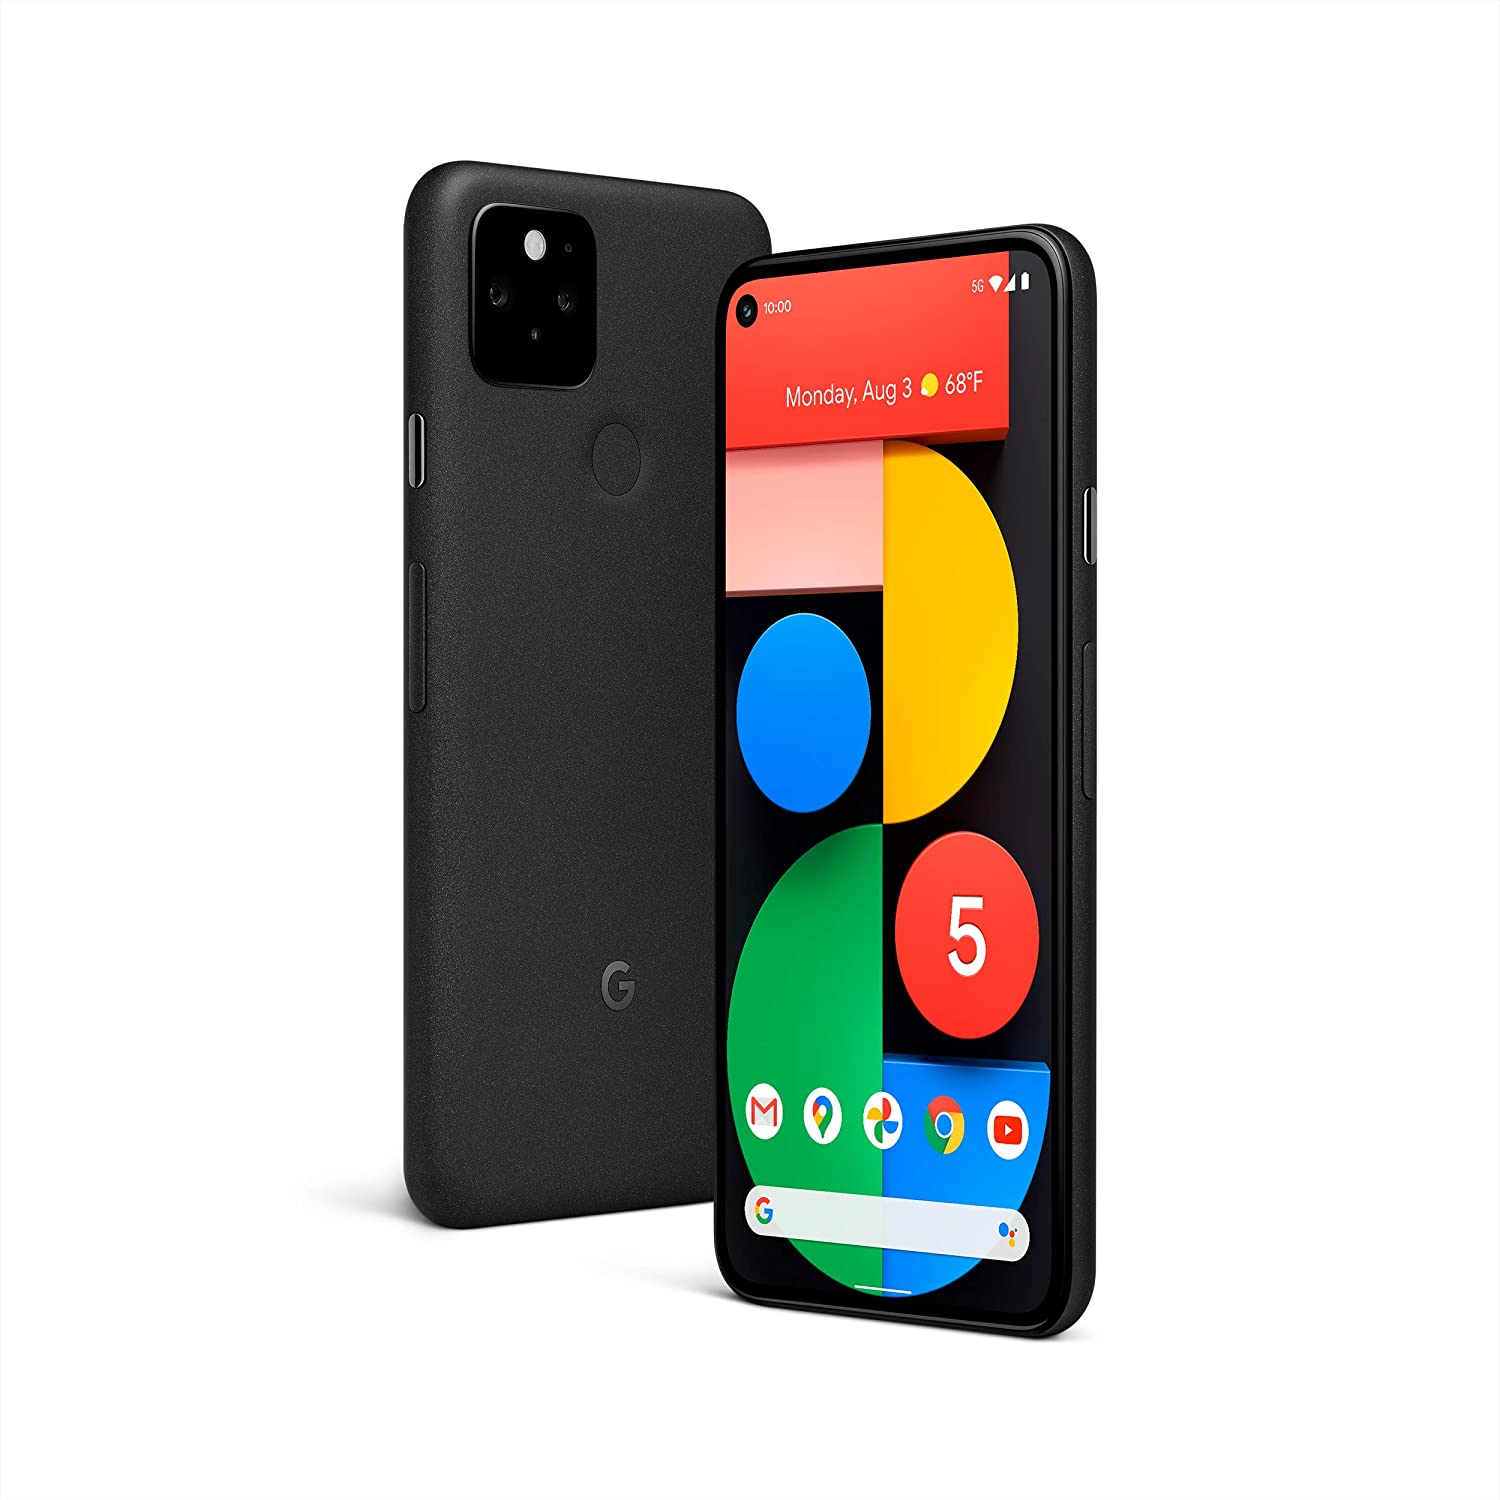 G Pixel Phone by Google serían los nombres de los smartphones